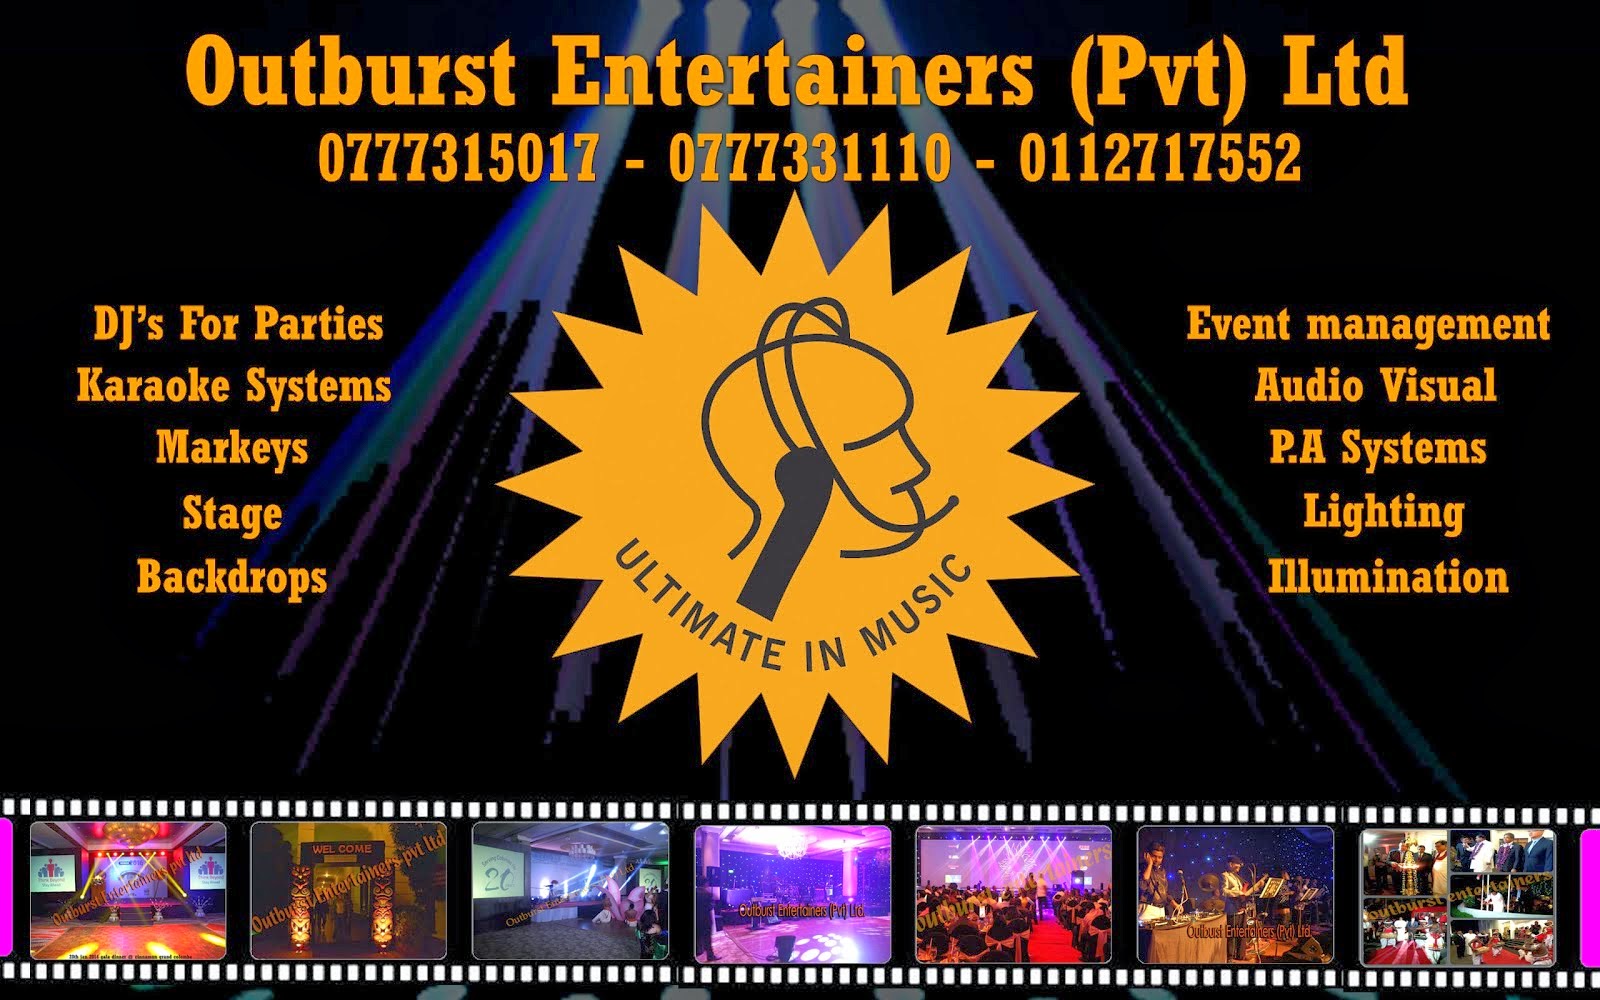 Outburst Entertainers (Pvt) Ltd.